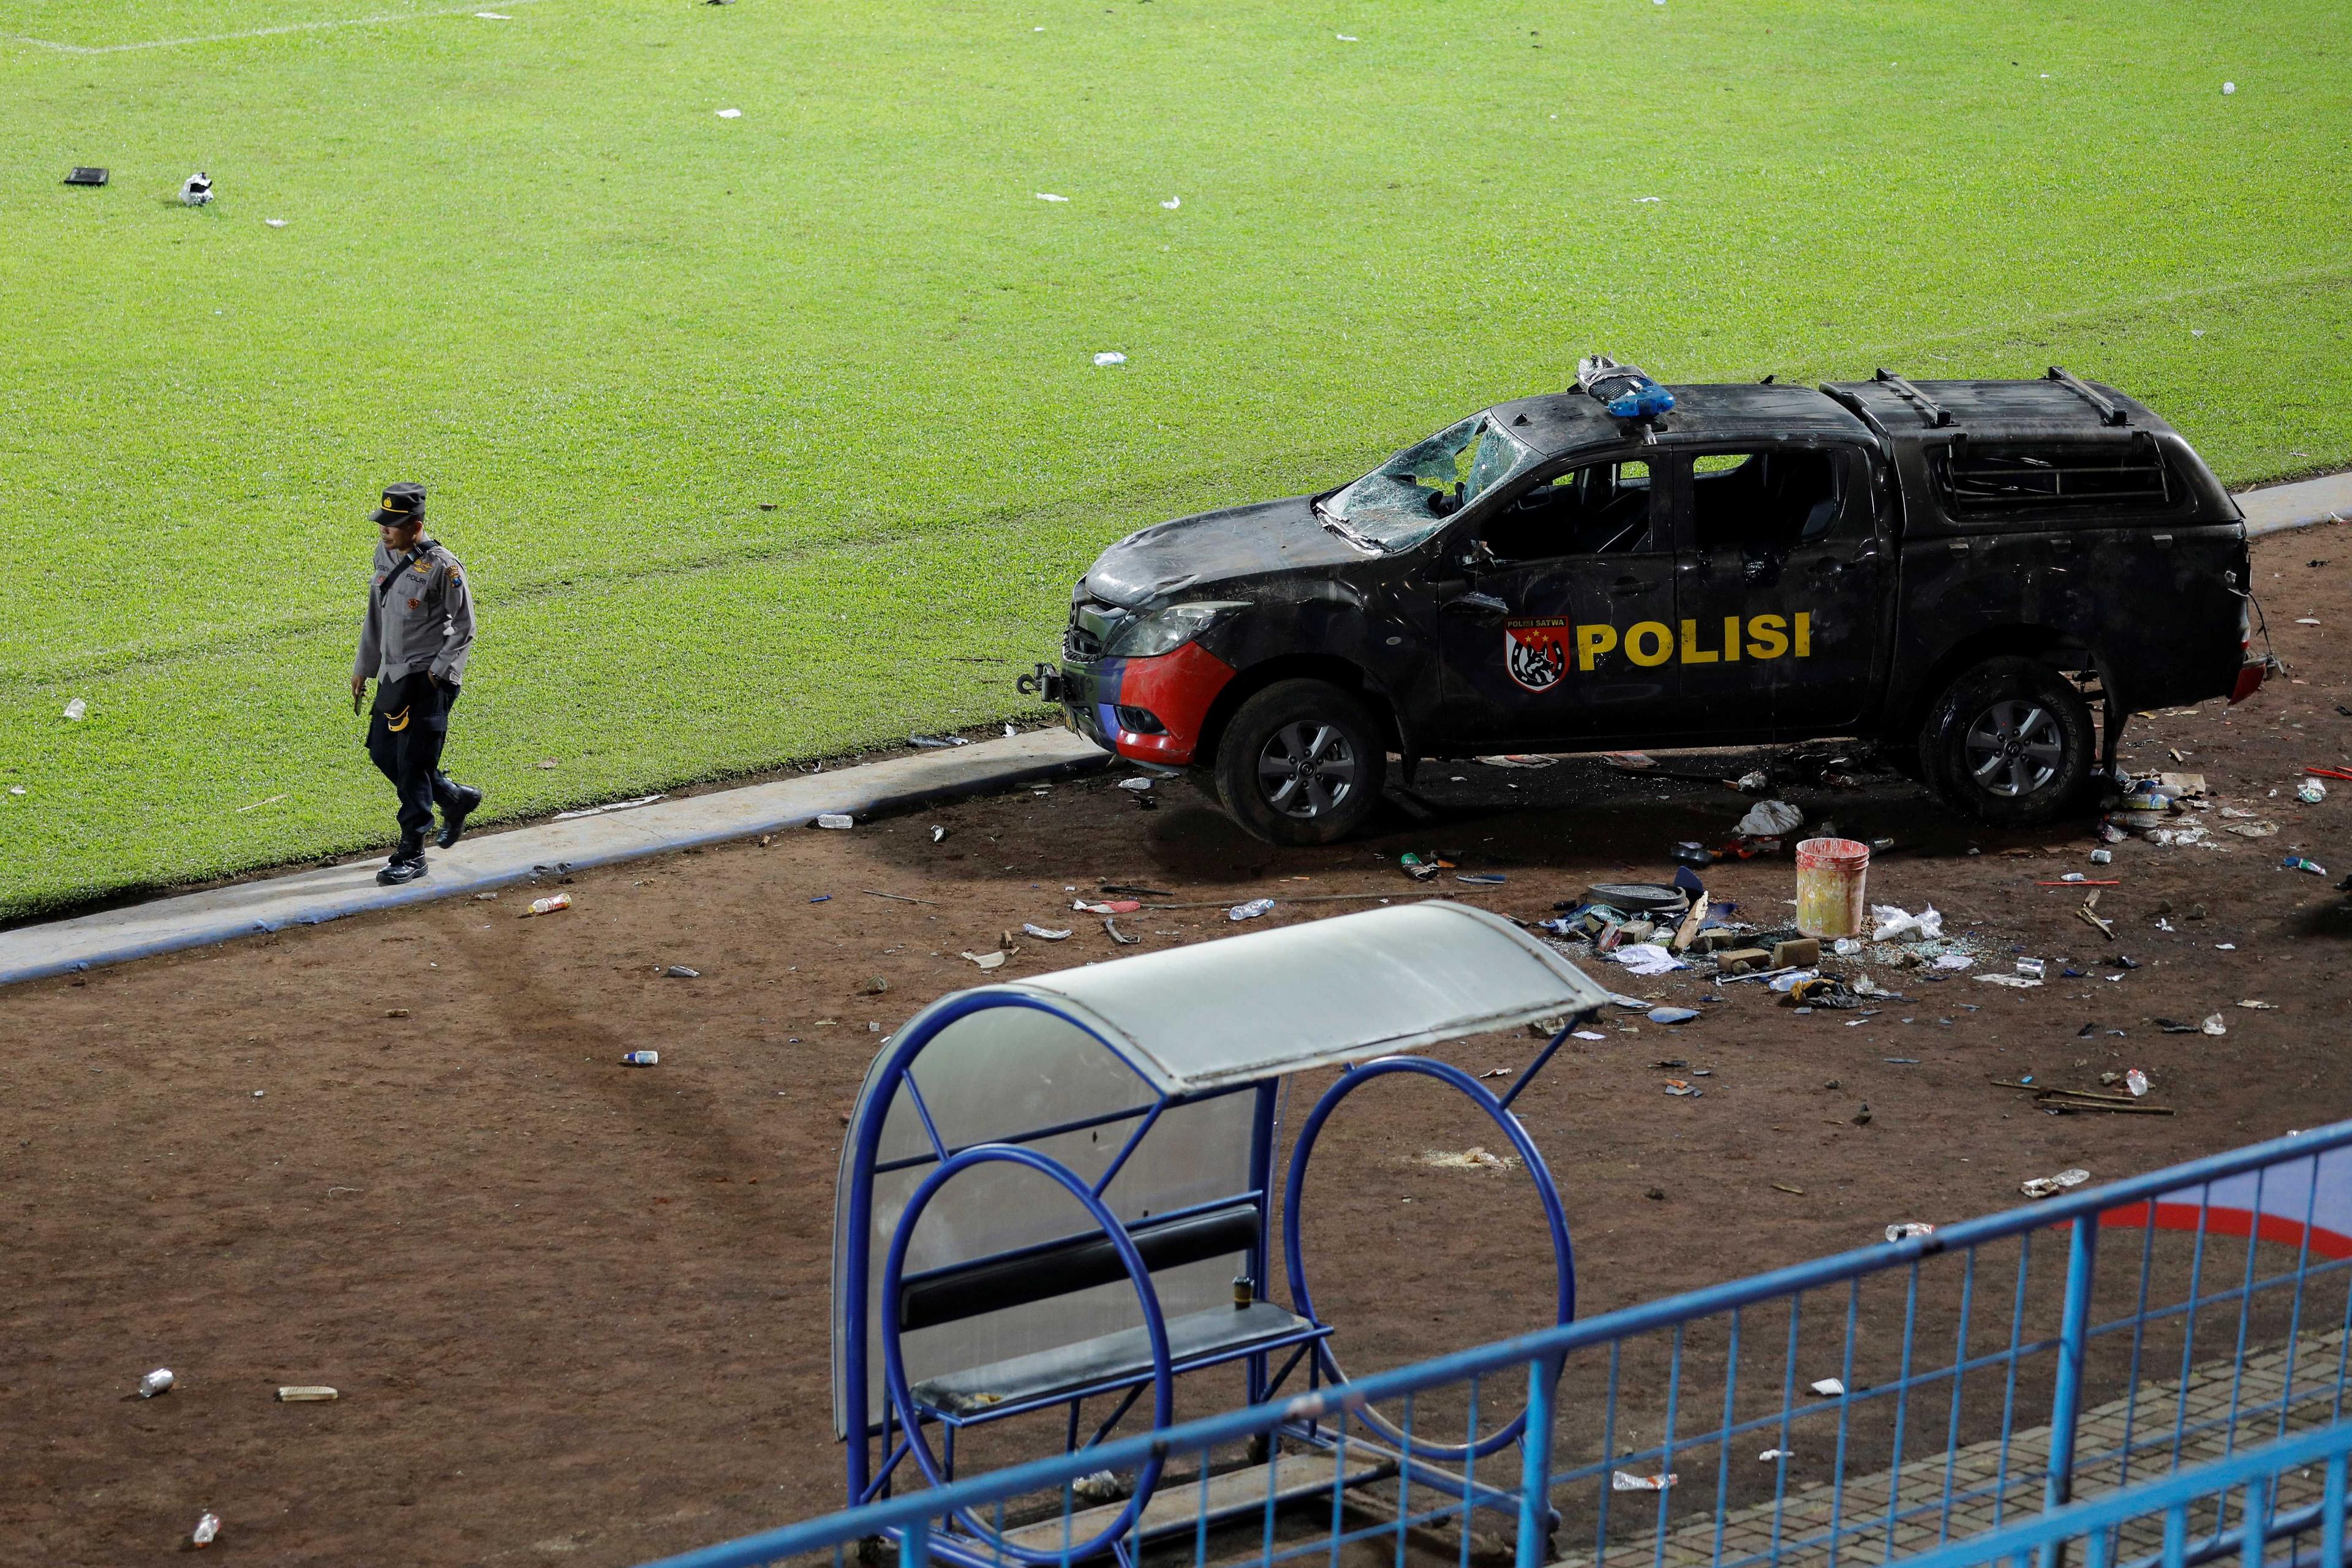 Pegawai polis berjalan di tepi kenderaan polis yang rosak akibat rusuhan di padang Stadium Kanjuruhan, Malang selepas perlawanan antara Arema FC dan Persebaya Surabaya pada 2 Oktober lalu. Gambar: Reuters 